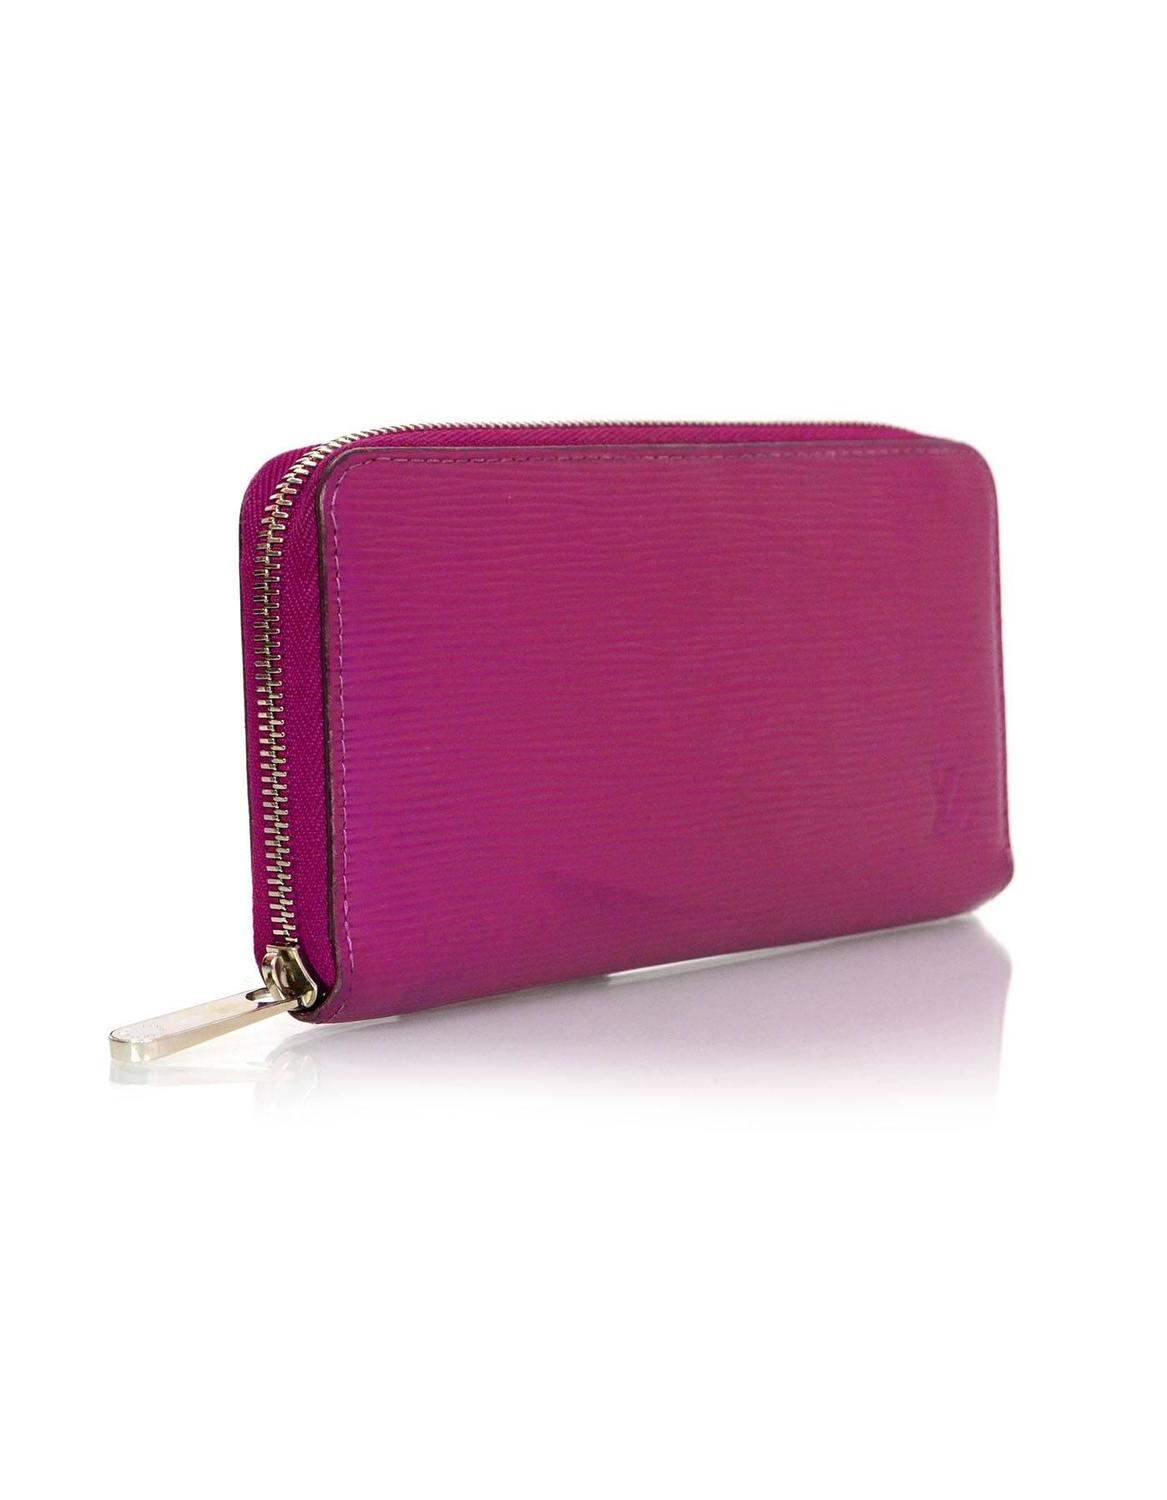 Louis Vuitton Fuchsia Epi Leather Zippy Wallet For Sale at 1stdibs